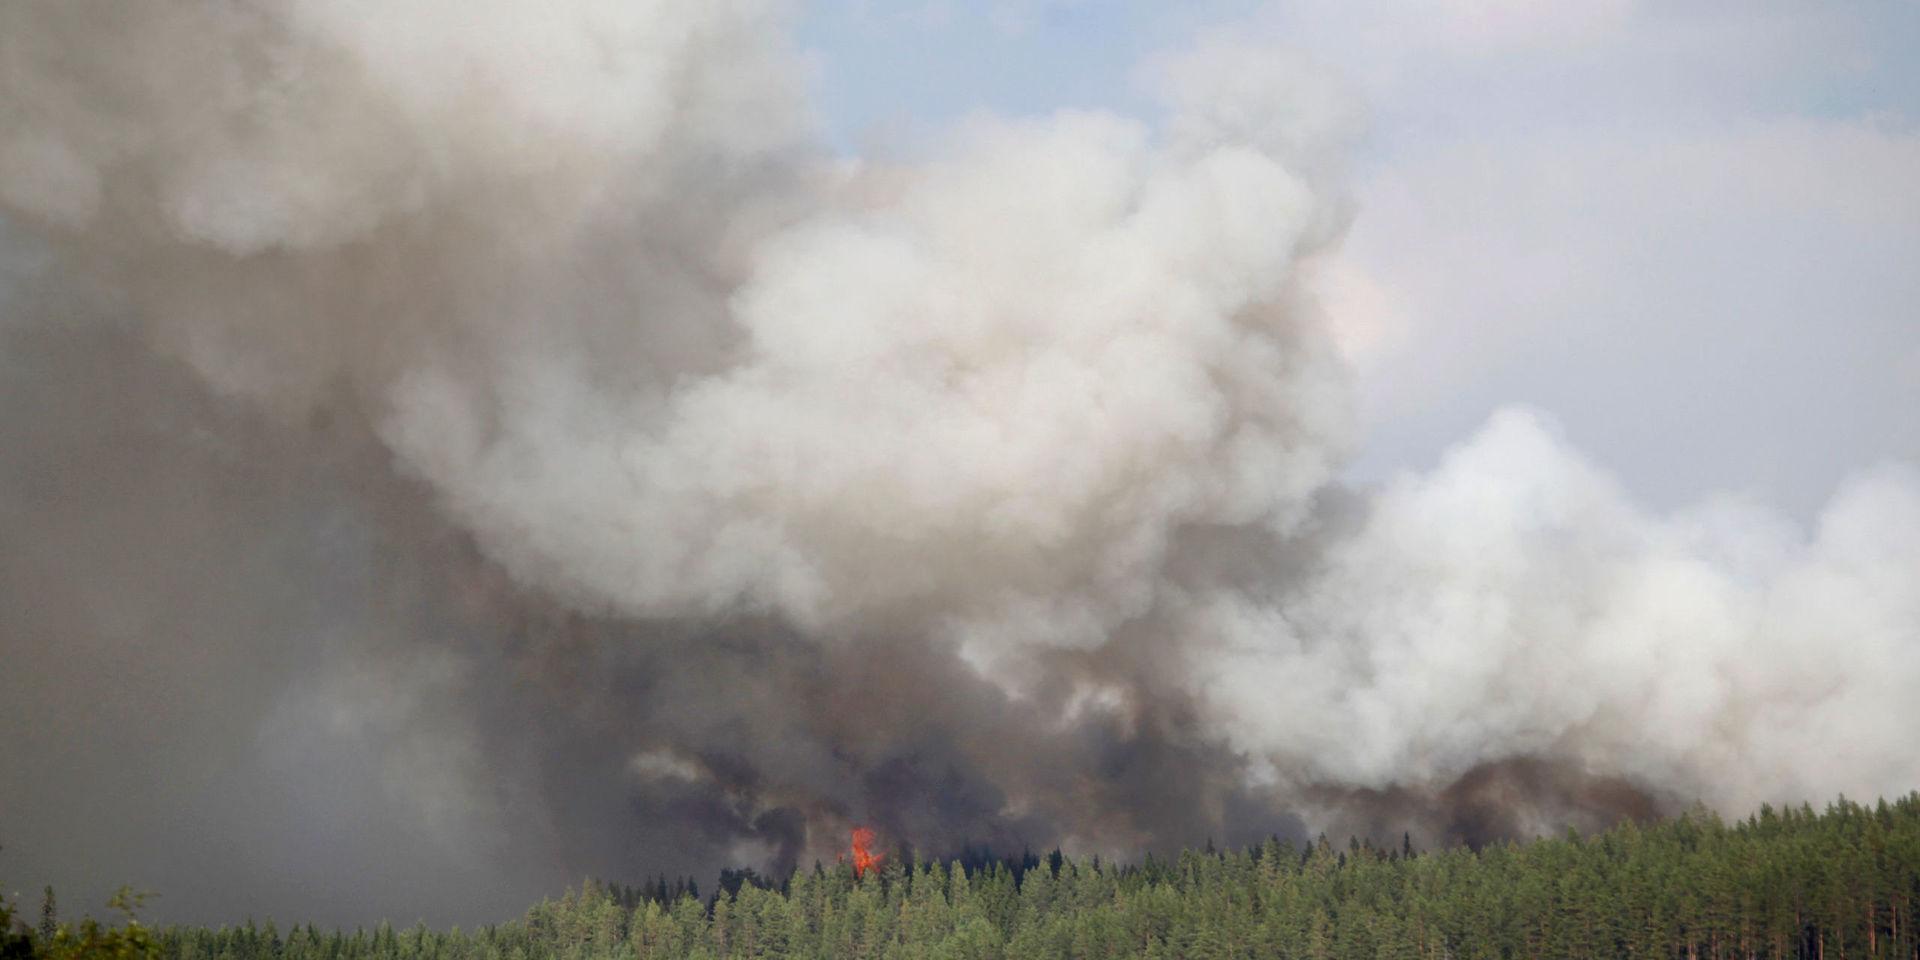 Räddningstjänsten i Göteborg skickar nu medarbetare för att bekämpa skogsbränderna som just nu rasar i Dalarna. Bilden är emellertid från Hammarstrand i Jämtland. 